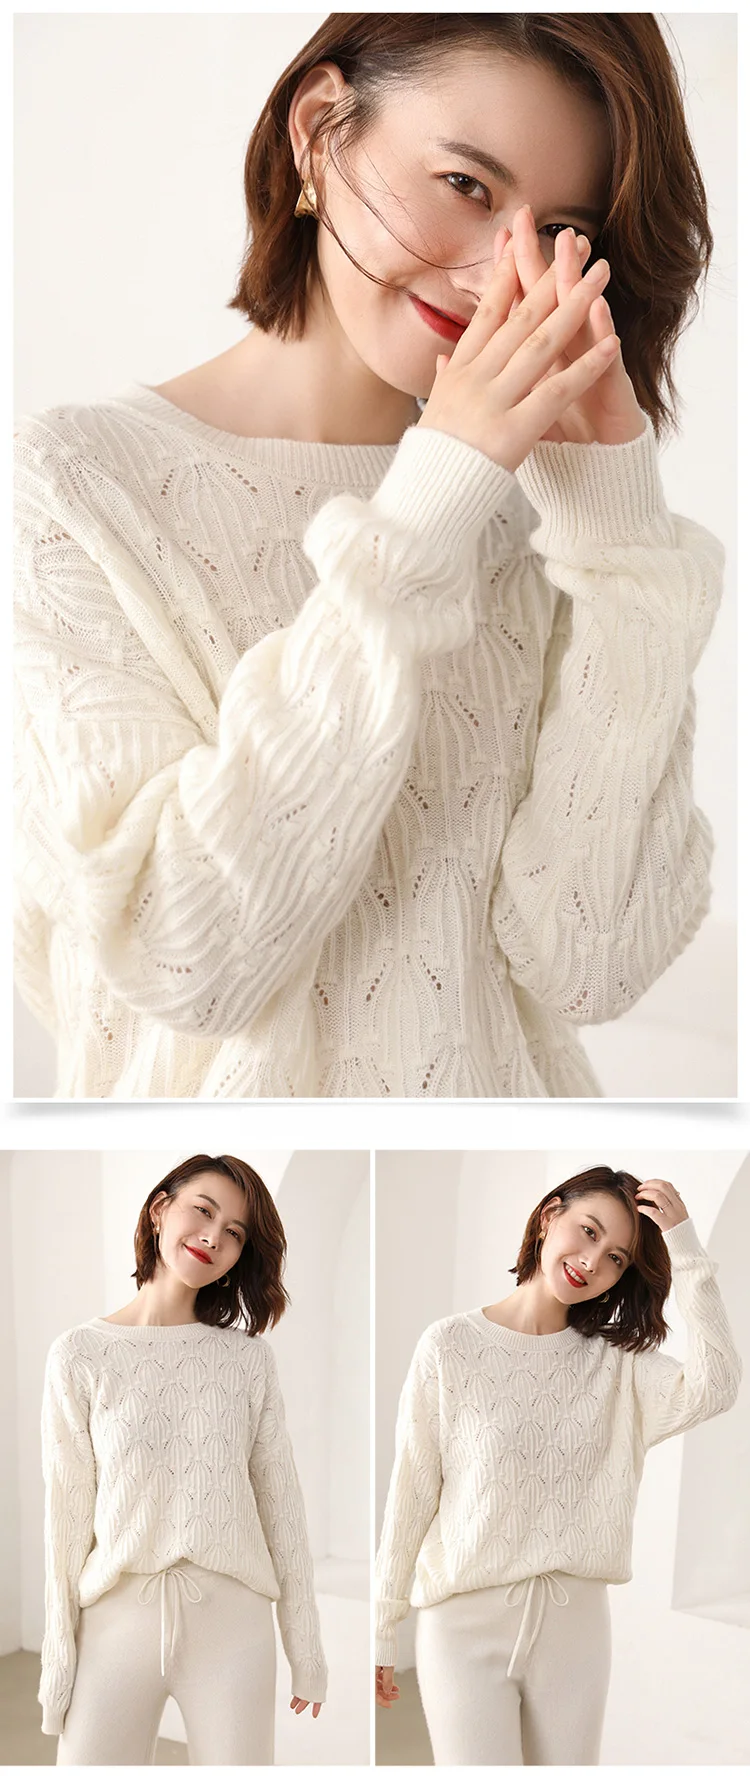 Новые зимние женские свитера коза, кашемир высокого качества Женский свитер с круглым вырезом пуловер вязаный узор свитер Топы